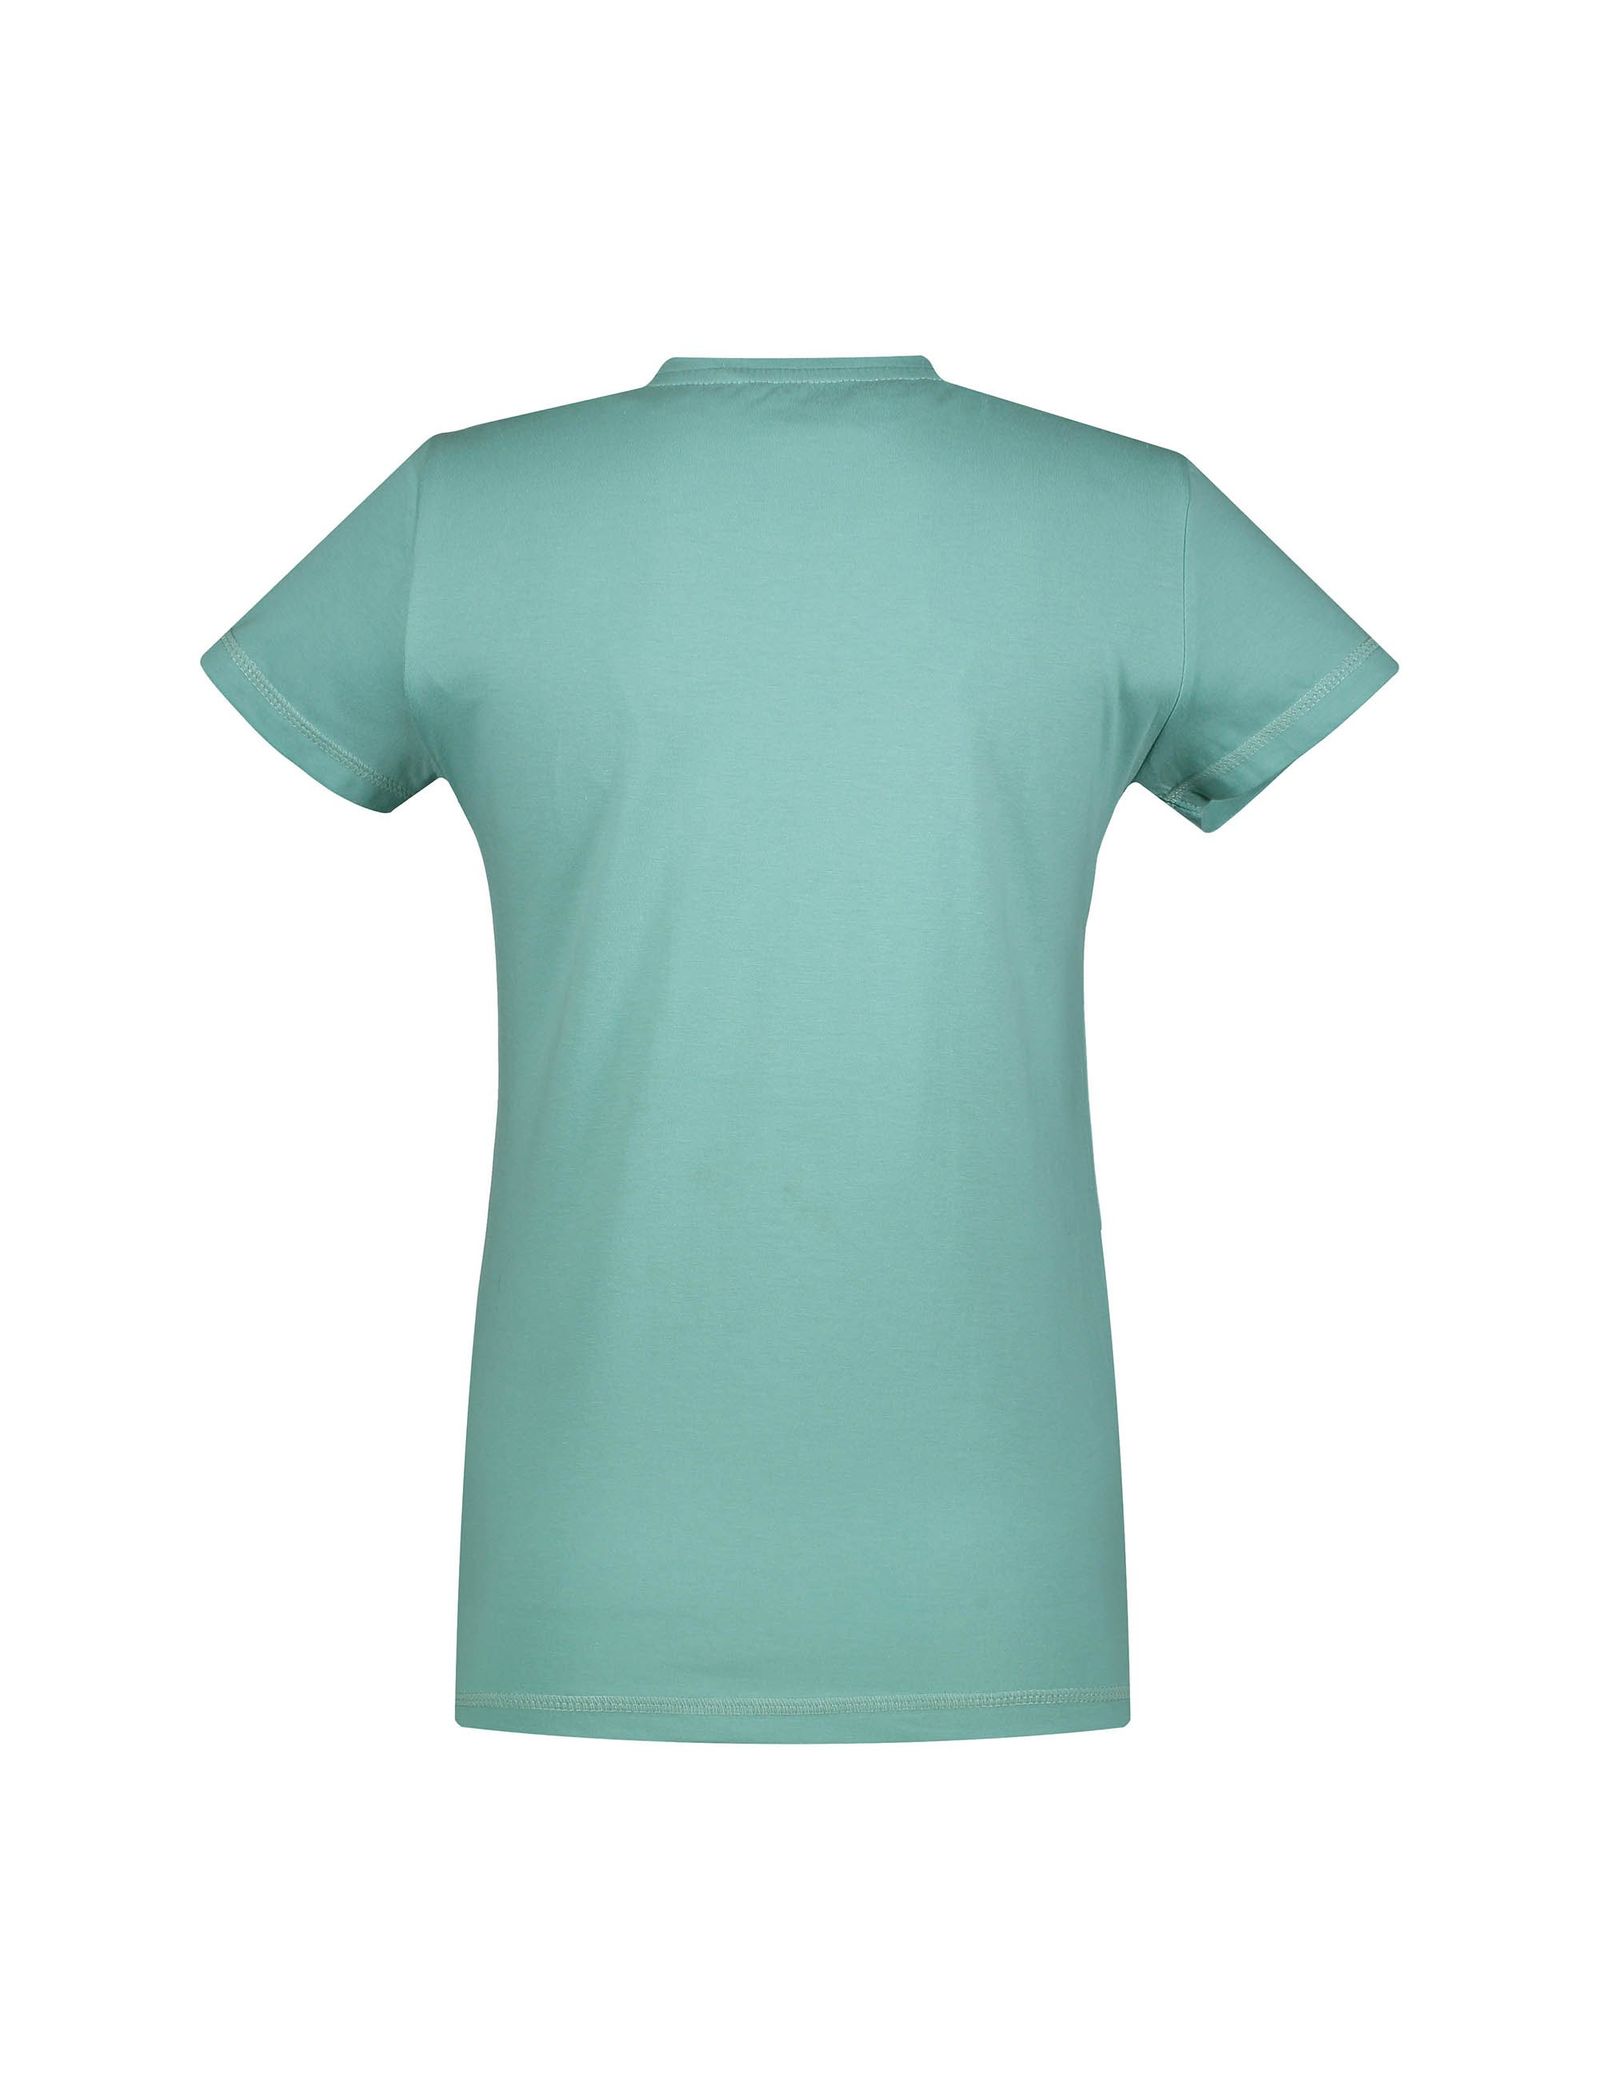 تی شرت و شلوار راحتی نخی زنانه - ناربن - سبز آبي روشن - 4